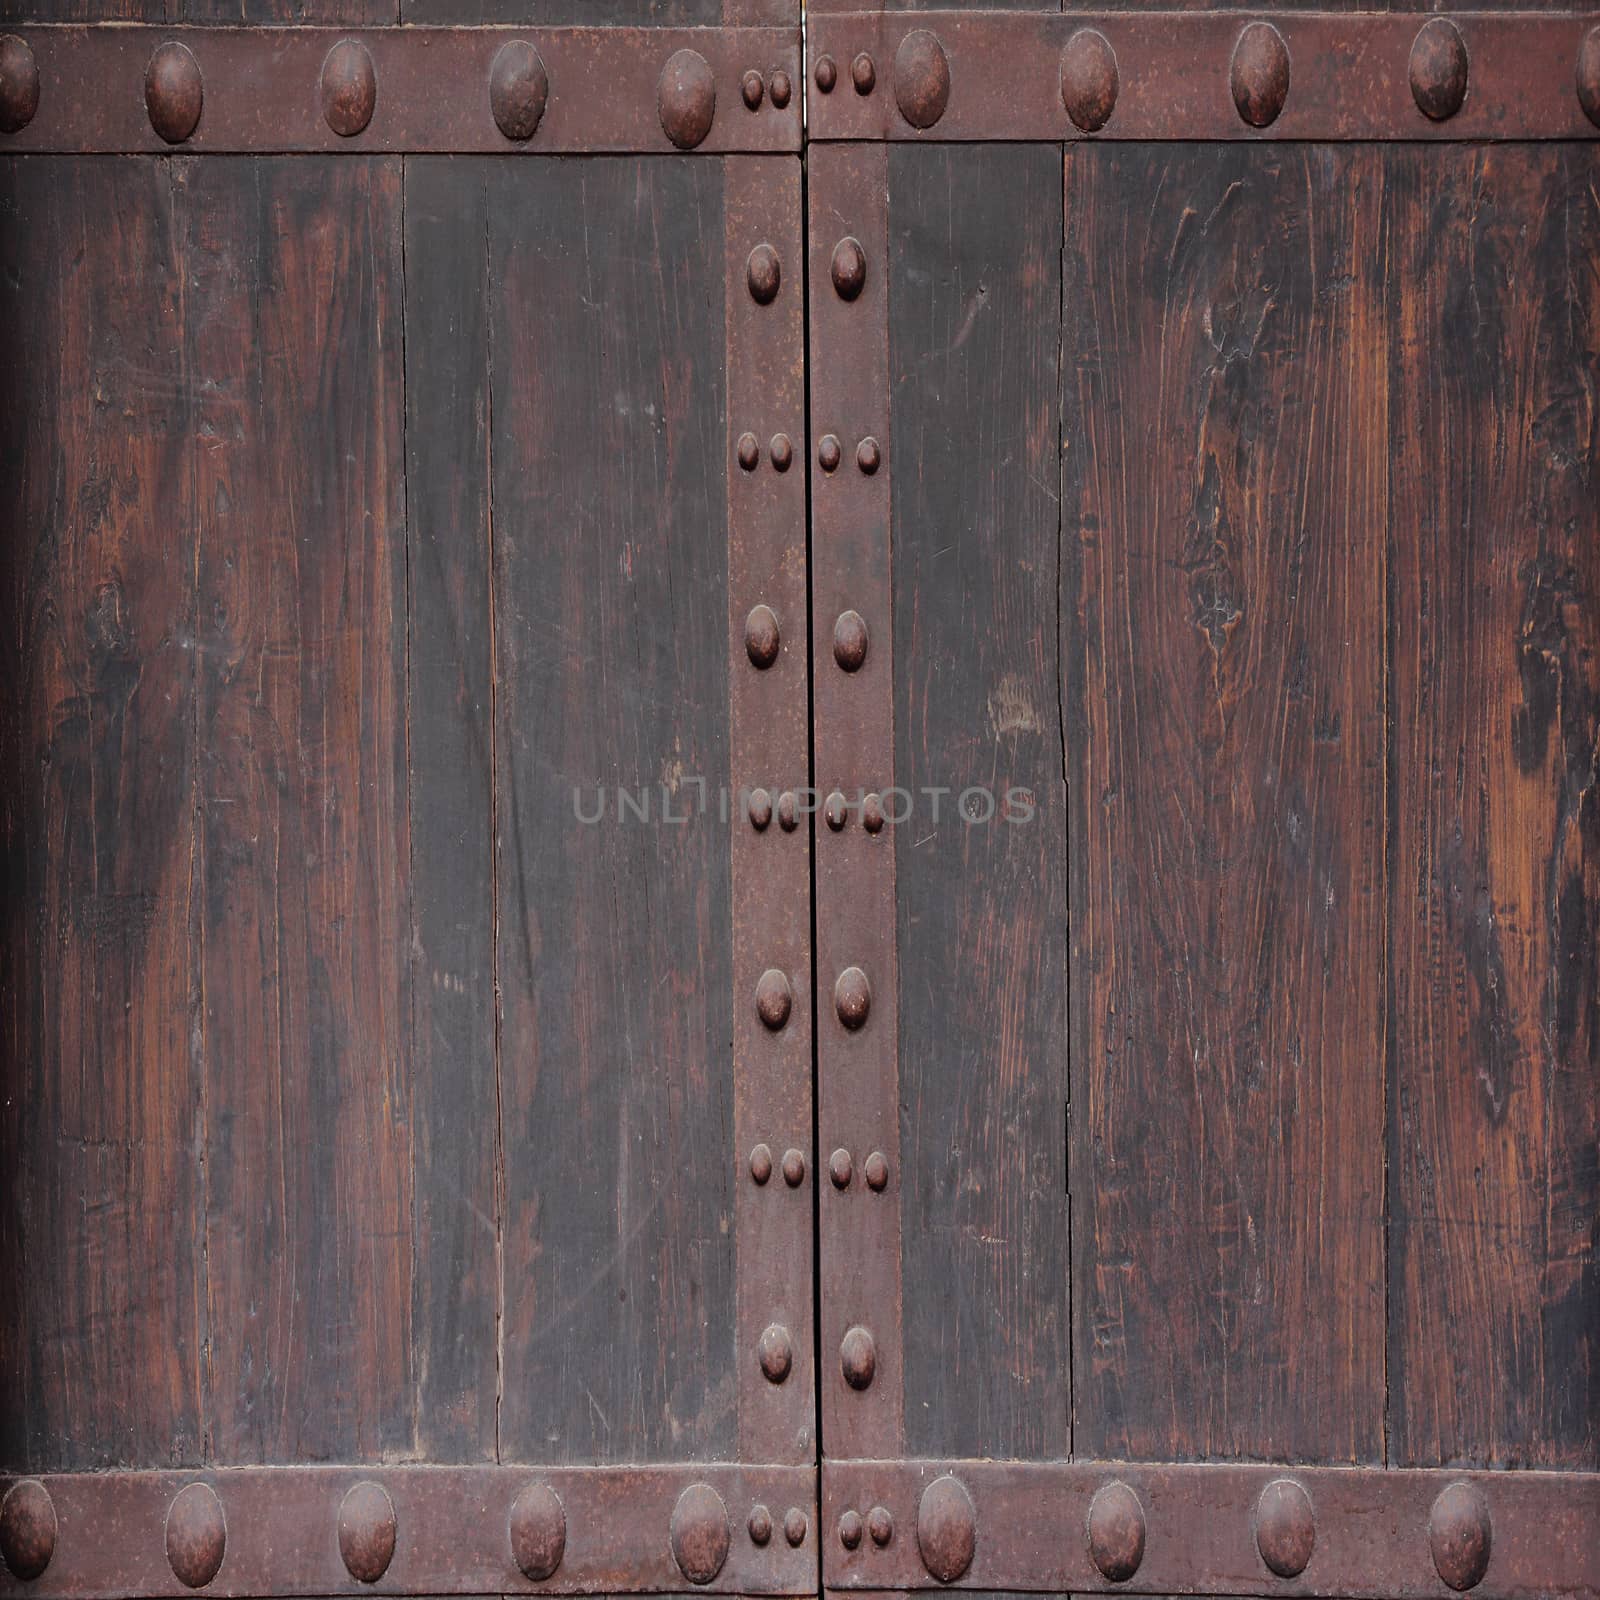 Vintage wooden door texture by wyoosumran